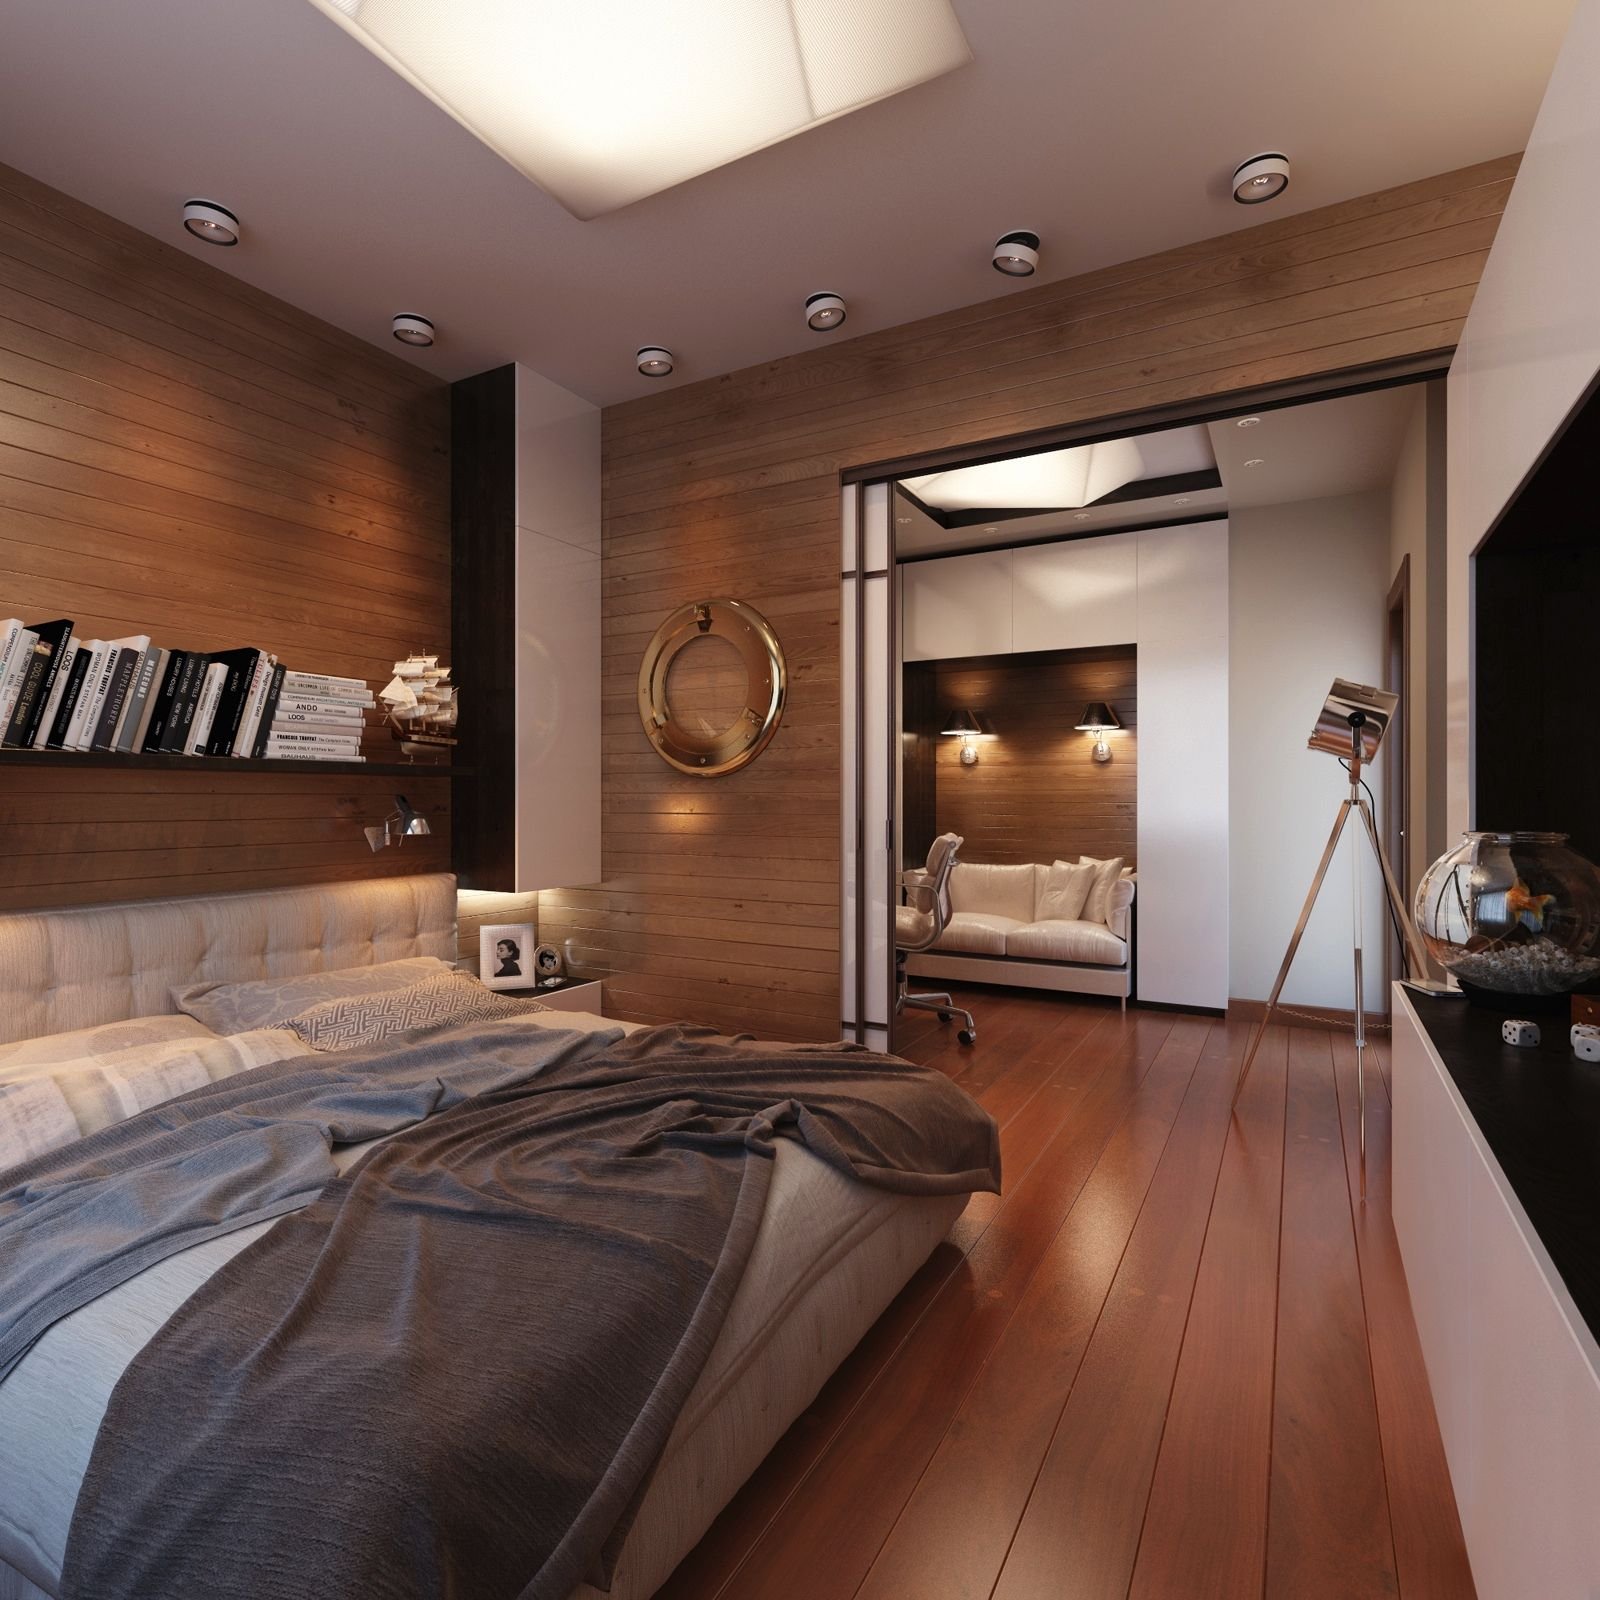 Дизайн в интерьере спальни: 24908 фото вариантов оформления, интересные идеи по расстановке мебели, отделке, декору спальной комнаты